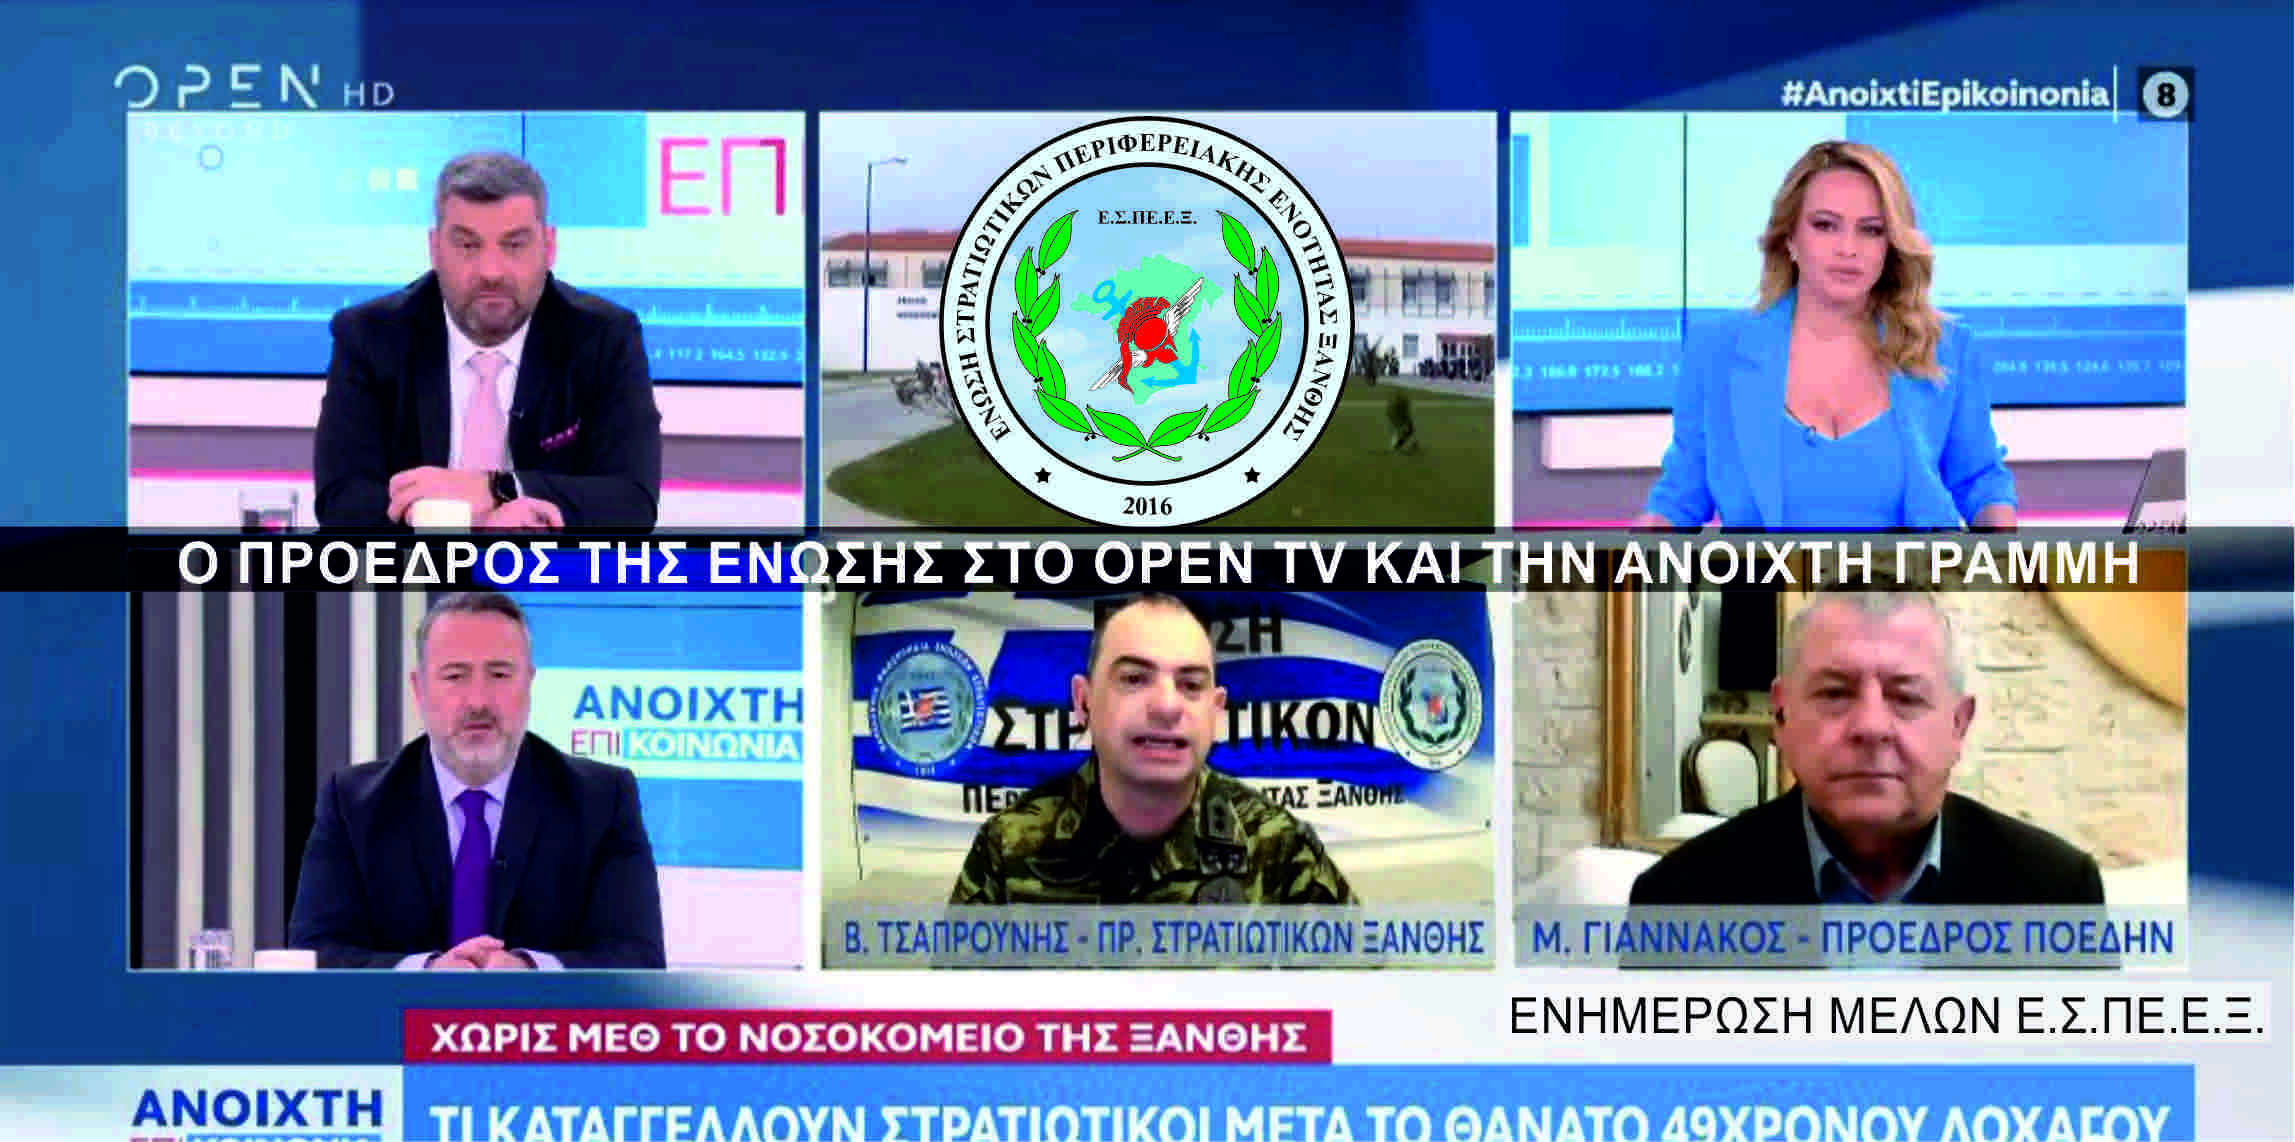 Ε.Σ.ΠΕ.Ε.Ξ. - Ο Πρόεδρος τη Ένωσης στο OPEN TV, προσκεκλημένος στην "Ανοιχτή Γραμμή"